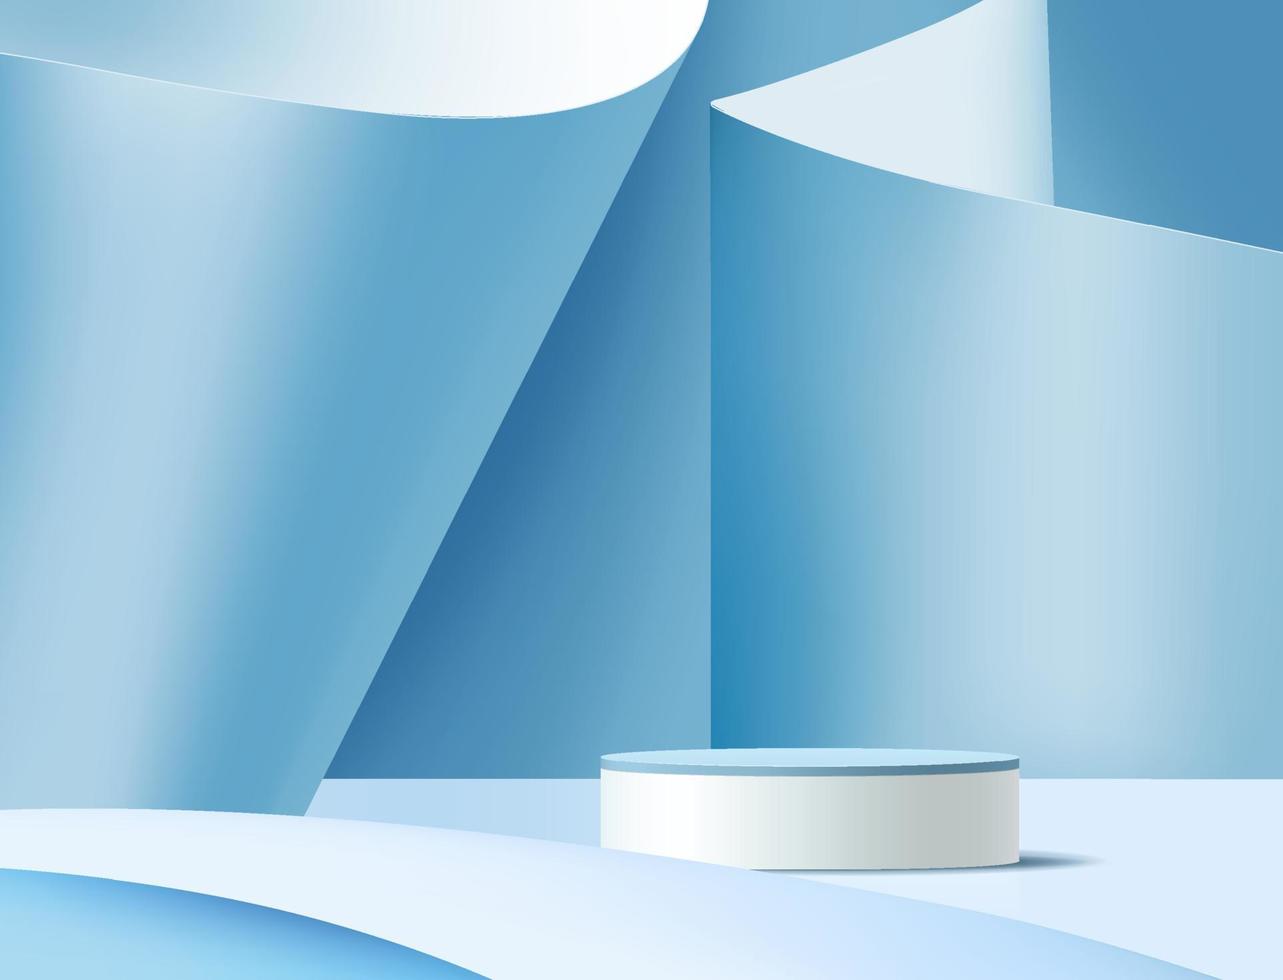 podio de pedestal de cilindro blanco 3d abstracto con plataforma de cubo geométrico beige. escena de pared mínima azul claro con iluminación. representación vectorial moderna para la presentación de productos cosméticos. vector